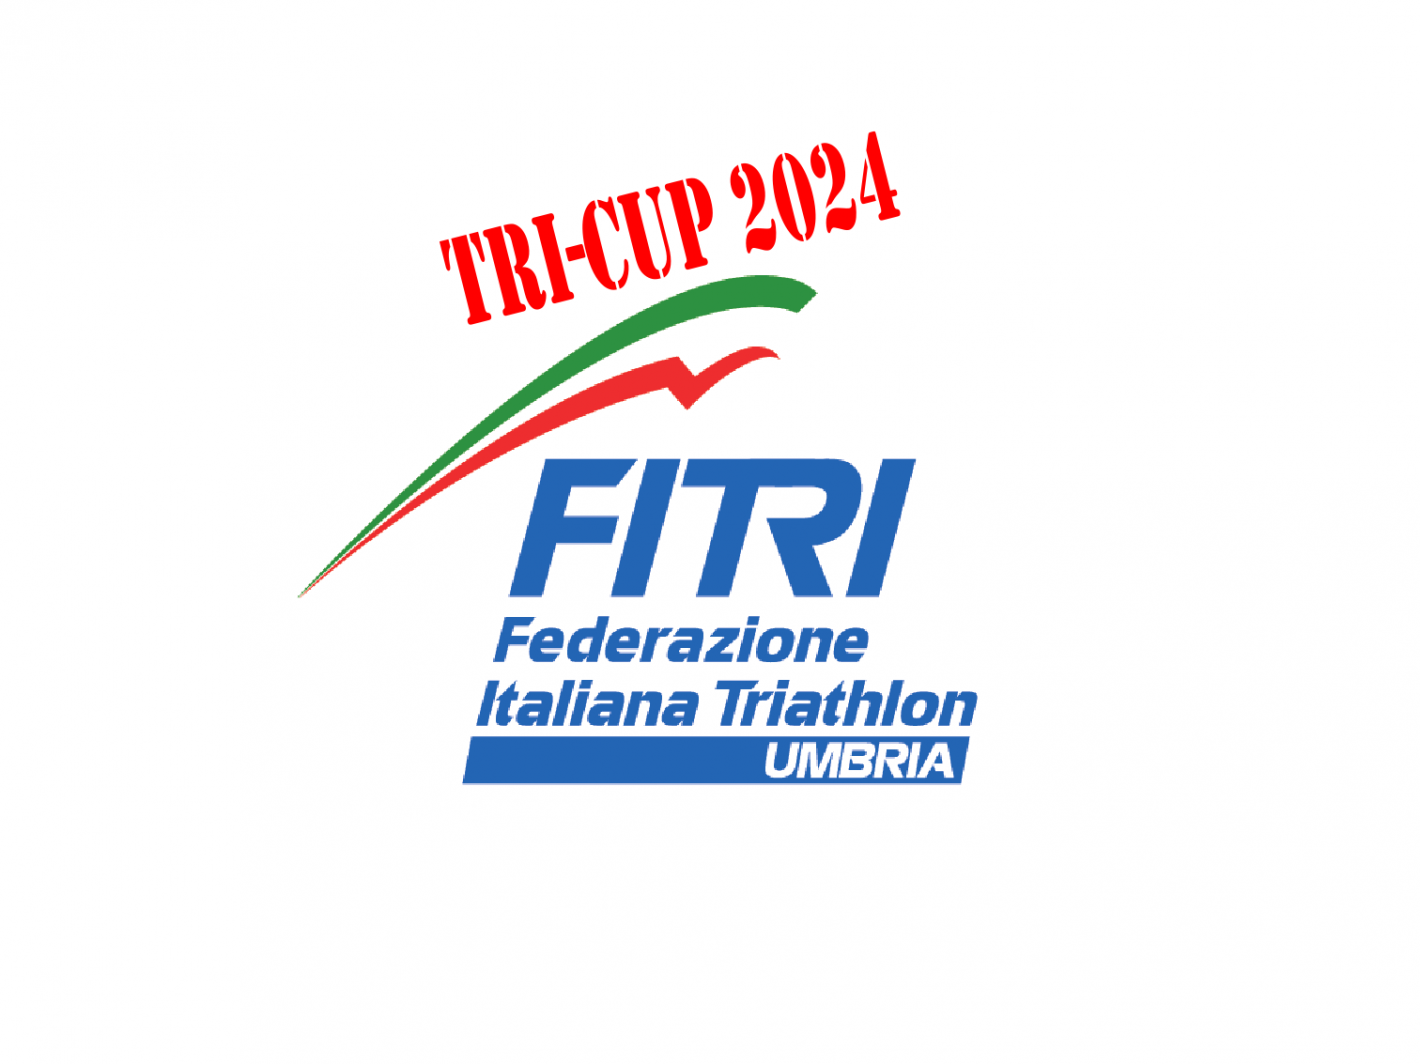 images/umbria/TRI-CUP_2024/medium/Logo_Profilo_Umbria_social2021_3.png